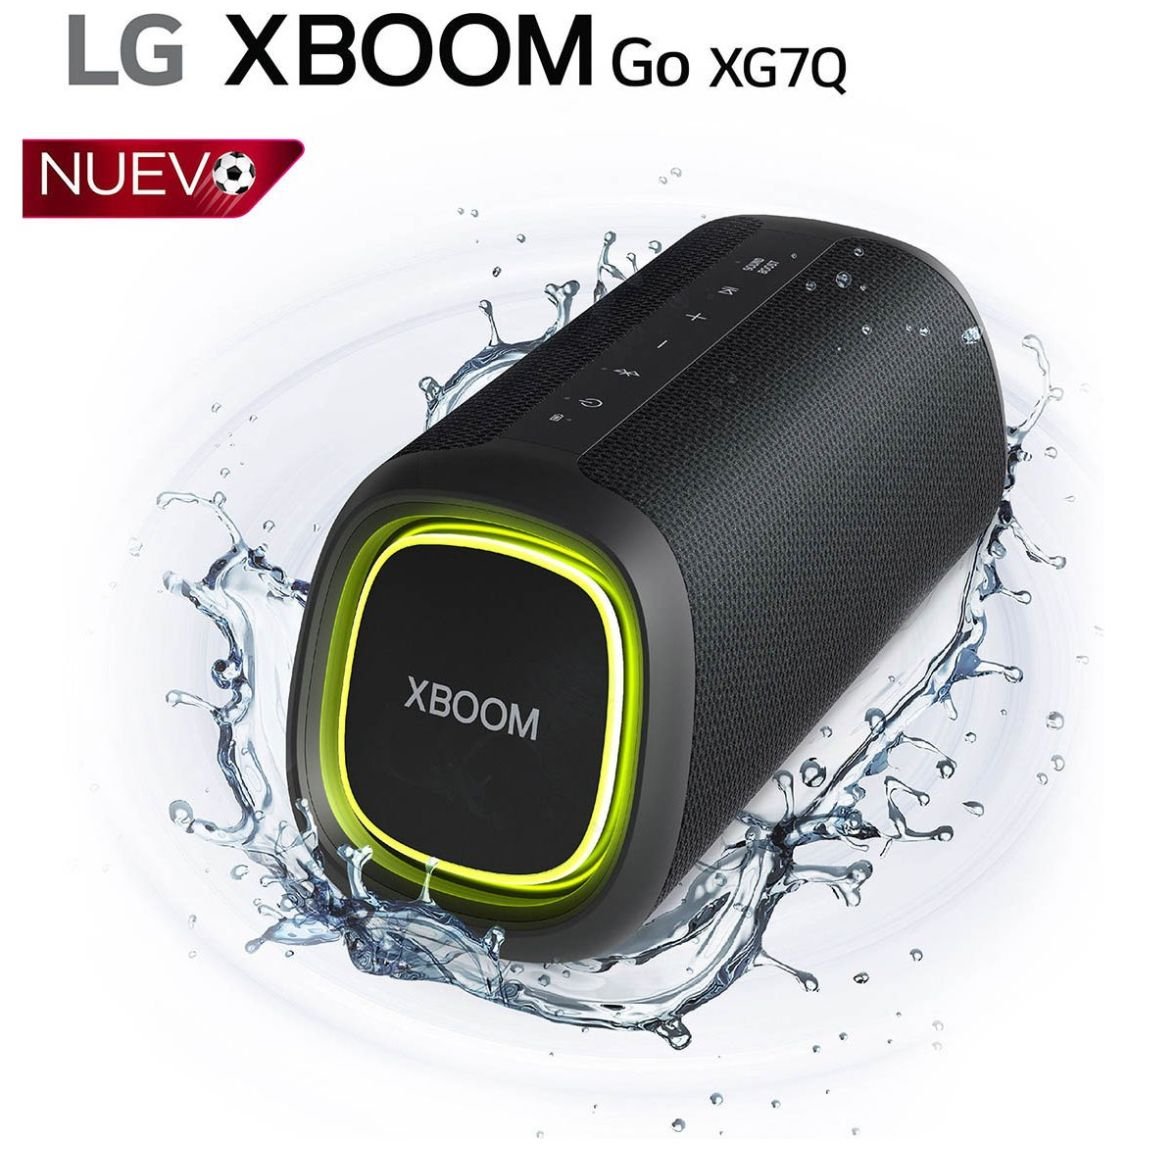 Bocina LG Xboom Go Xg7– a Prueba de Agua y Polvo, 24 Horas de Batería, 40W